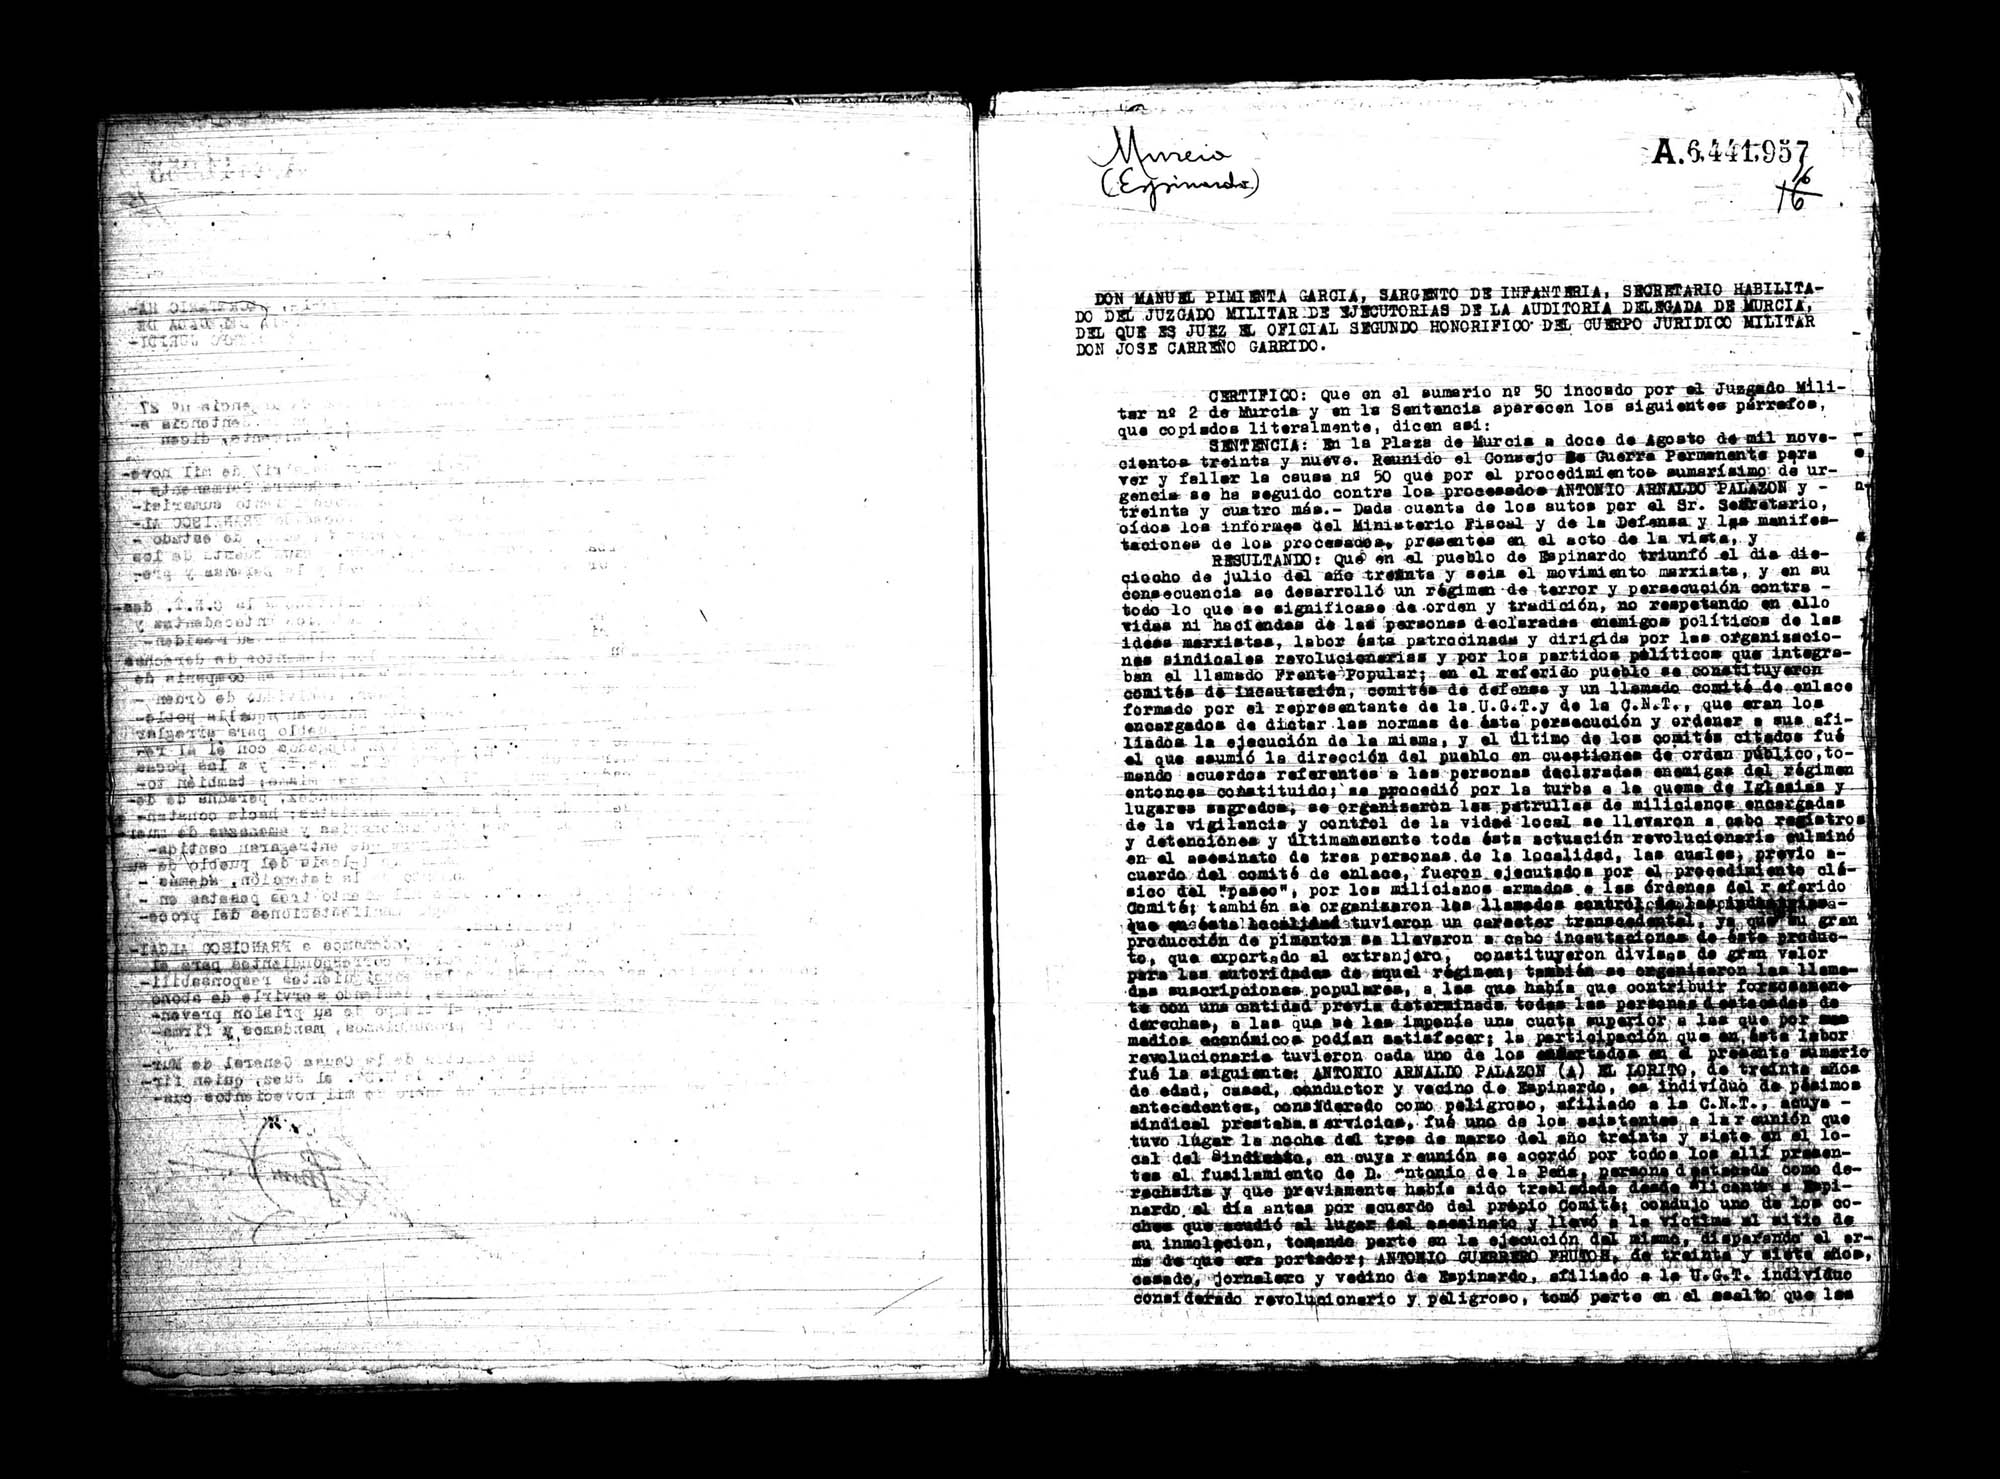 Certificado de la sentencia pronunciada contra Antonio Arnaldo Palazón y otros reos más, causa 50, el 12 de agosto de 1939 en Murcia.